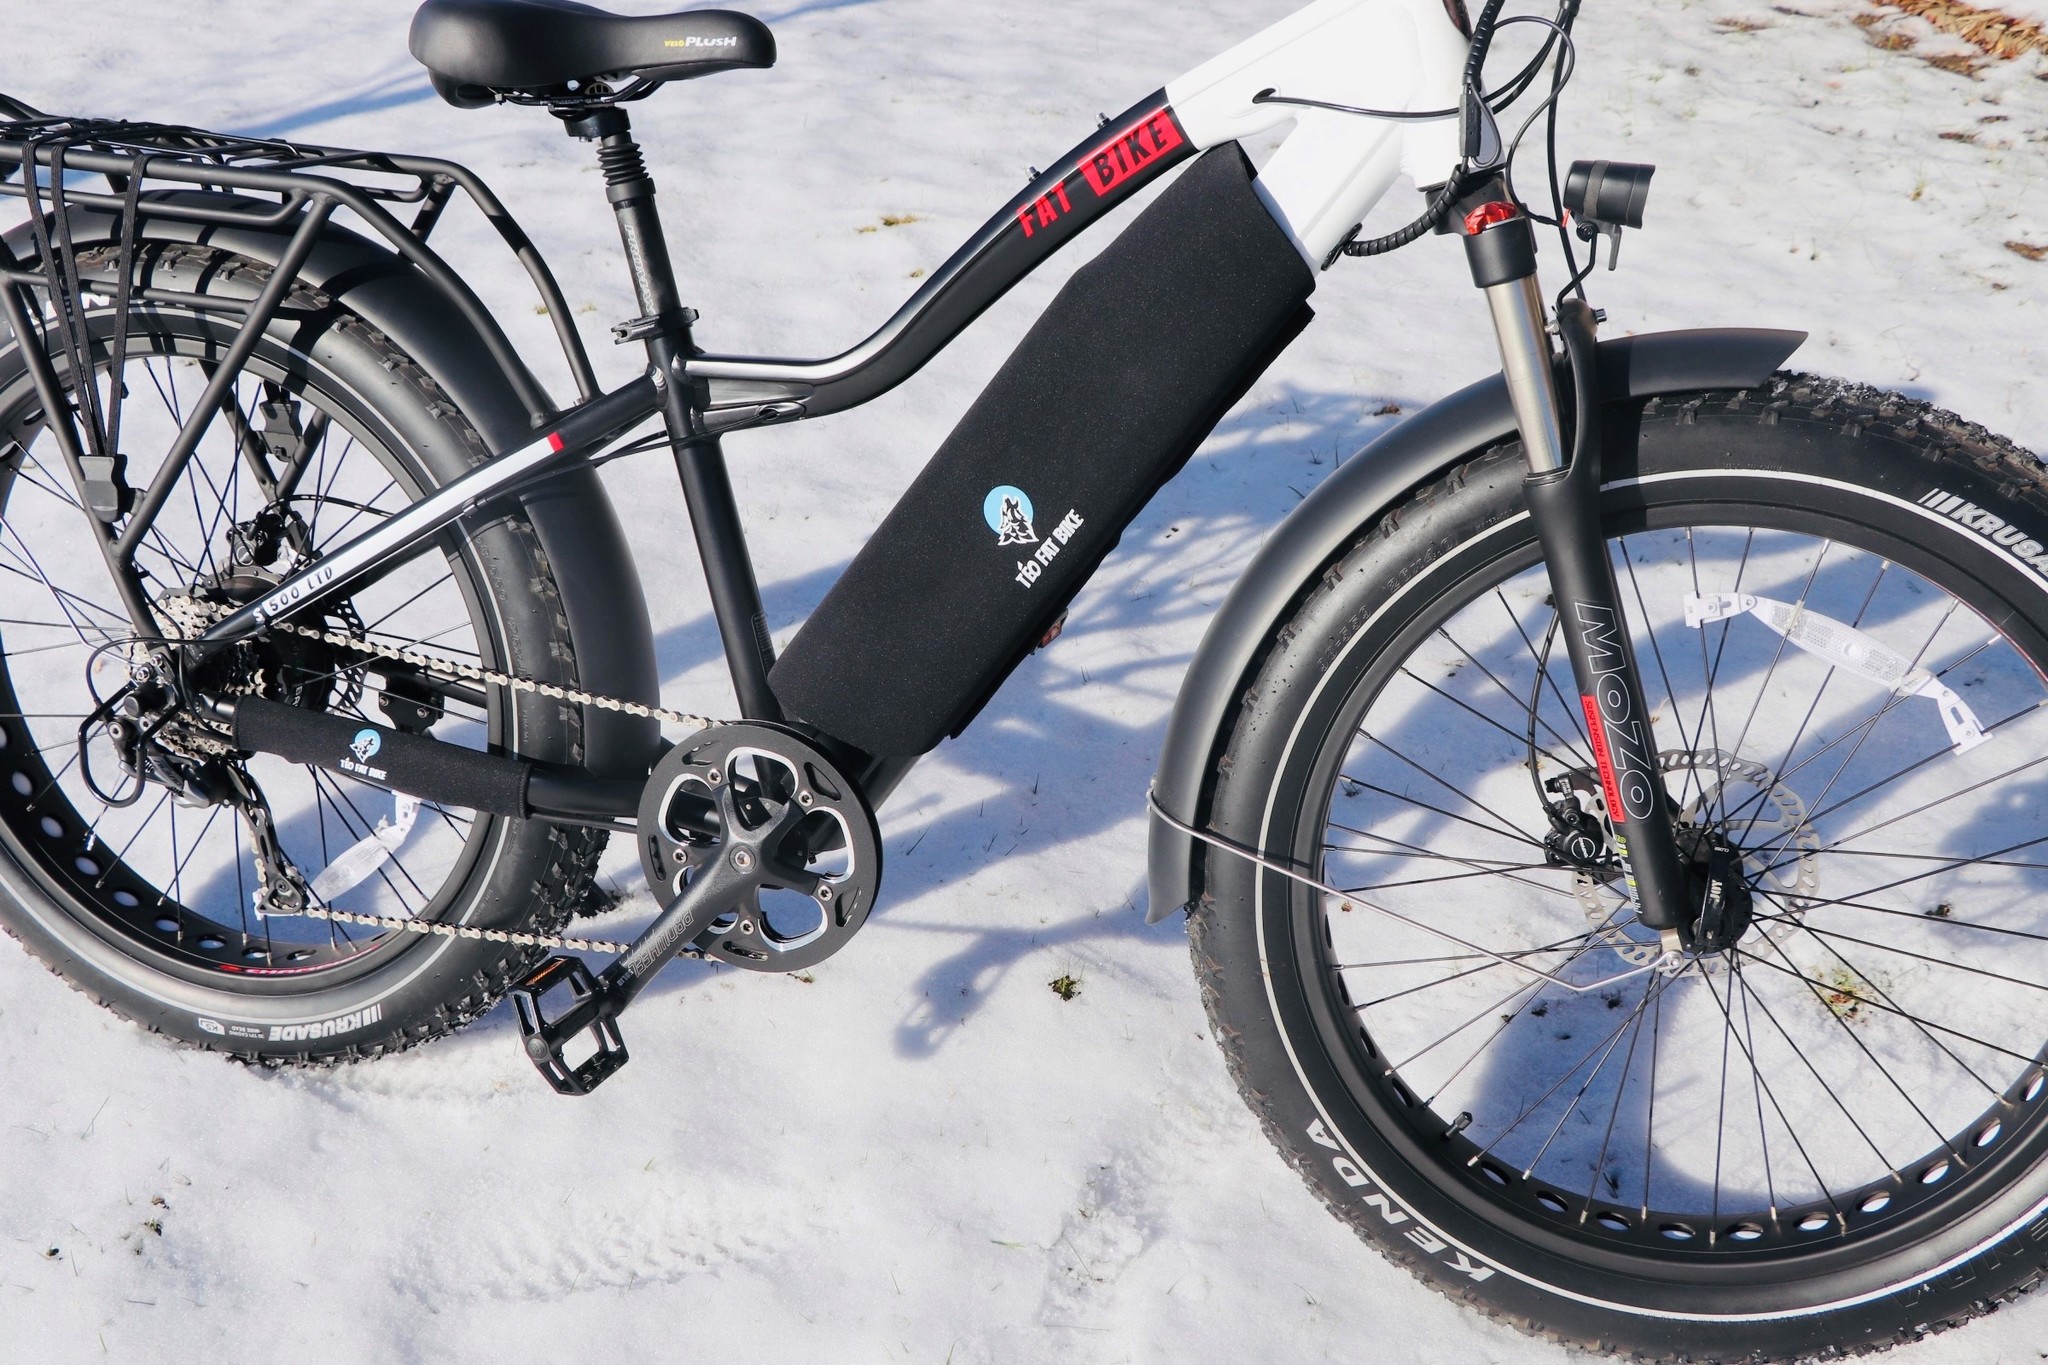 Fischer housse de protection pour contacts de batterie pour vélo électrique  - LATHO Cycles